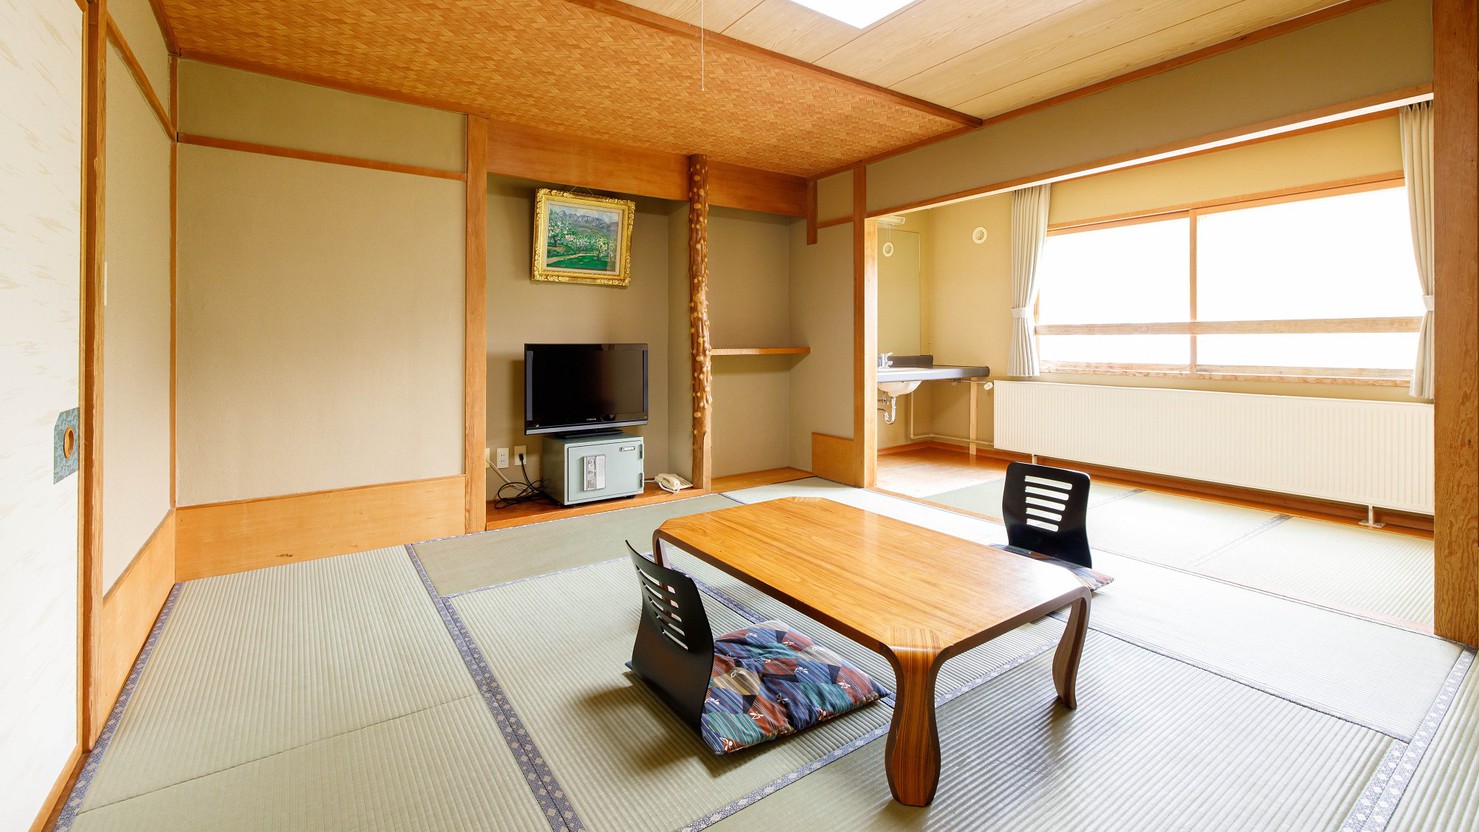  リーズナブル客室【和室10〜13畳】眺望はありませんがその分リーズナブル価格です。